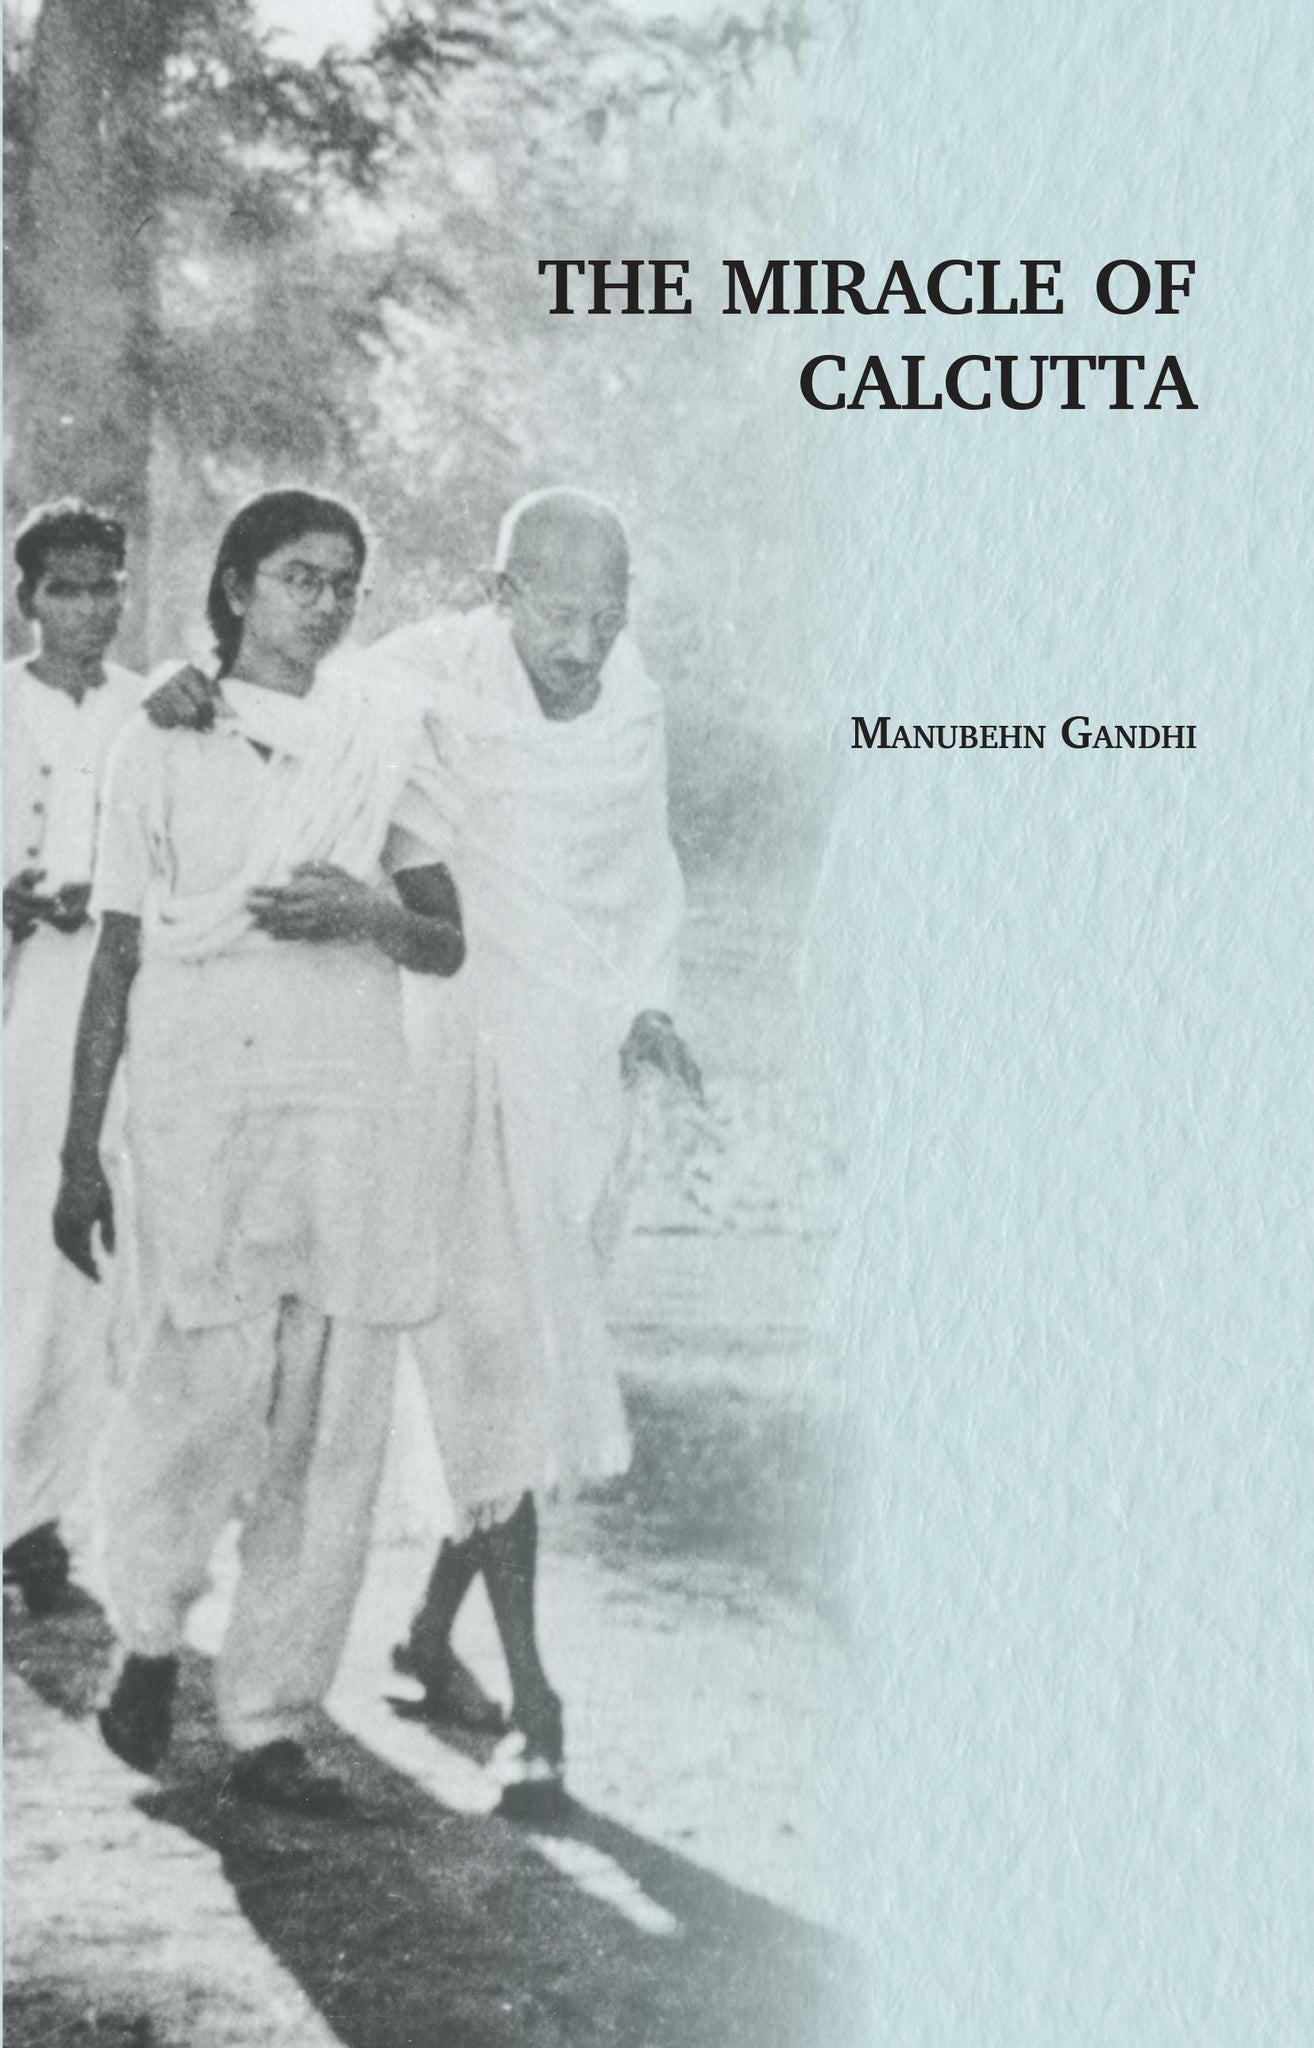 The Miracle Of Calcutta (The Miracle Of Calcutta)